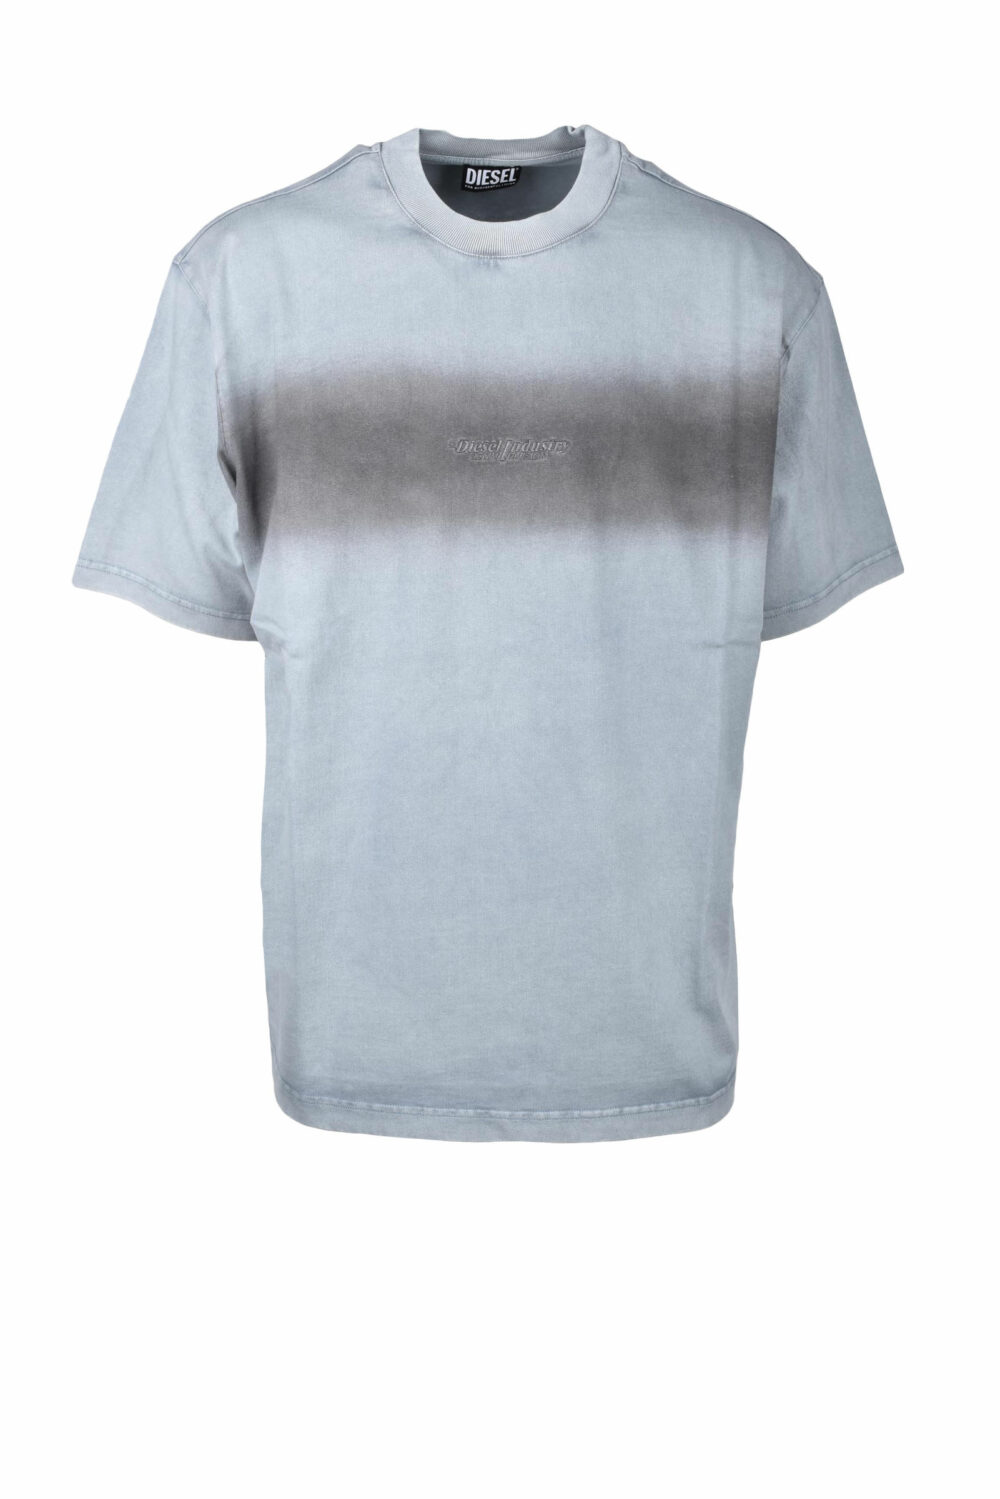 T-shirt Diesel tshirt Grigio - Foto 1